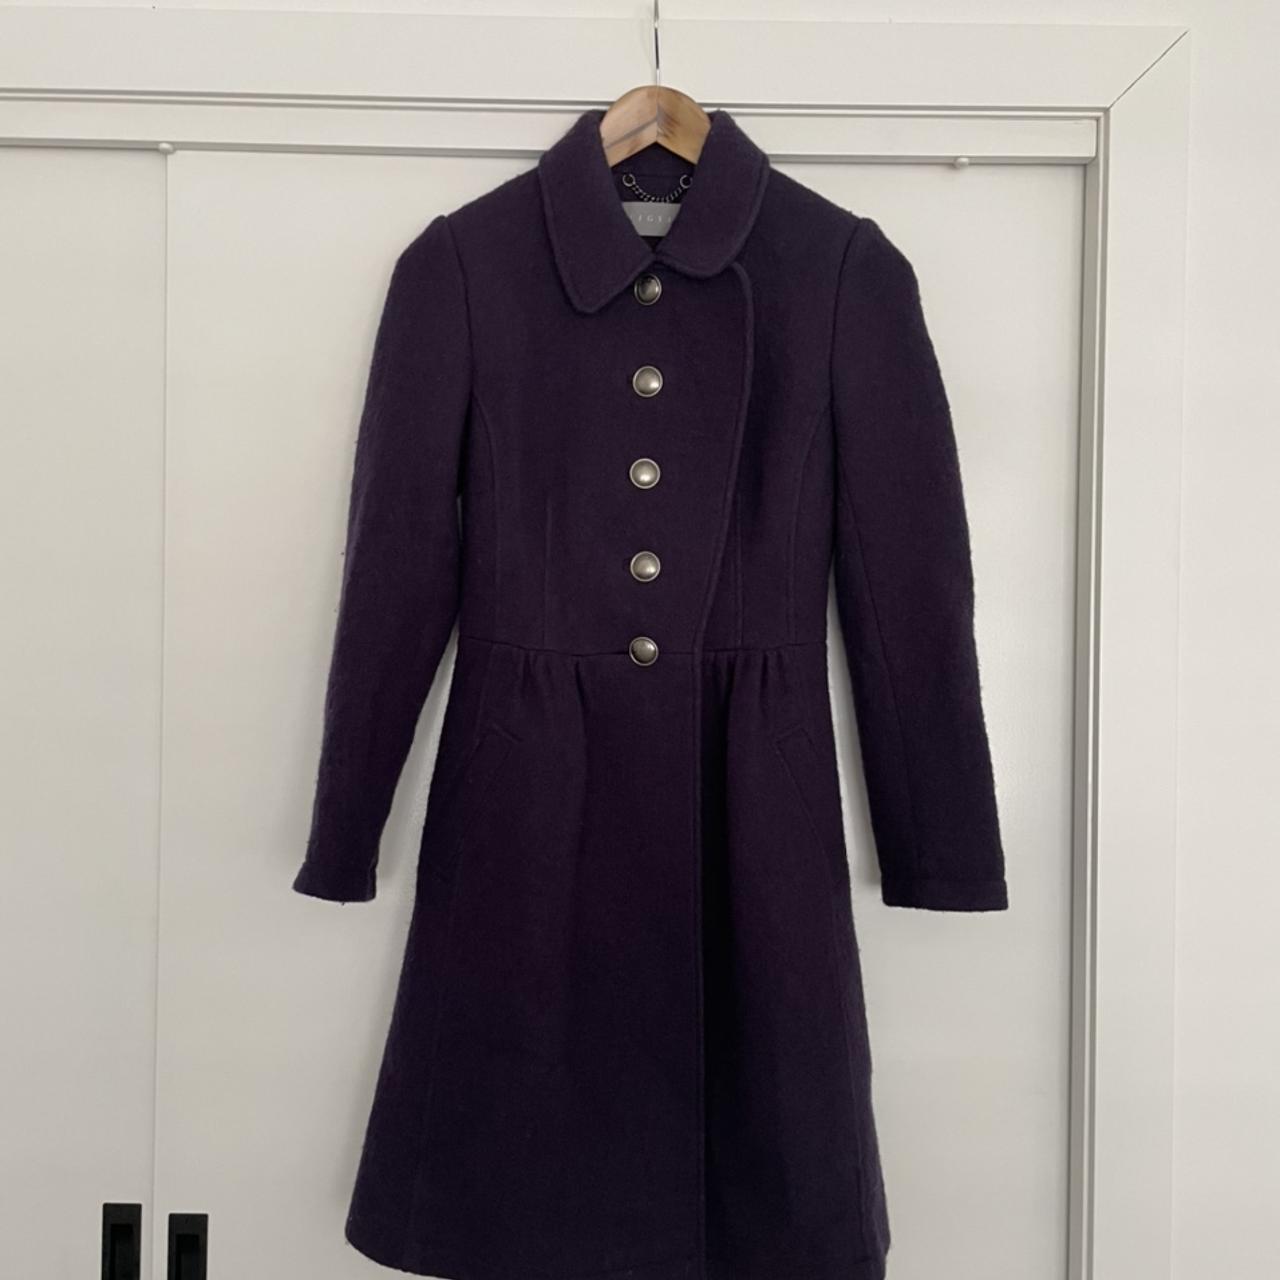 100% Wool Coat by Jigsaw Size 6 Dark Purple... - Depop